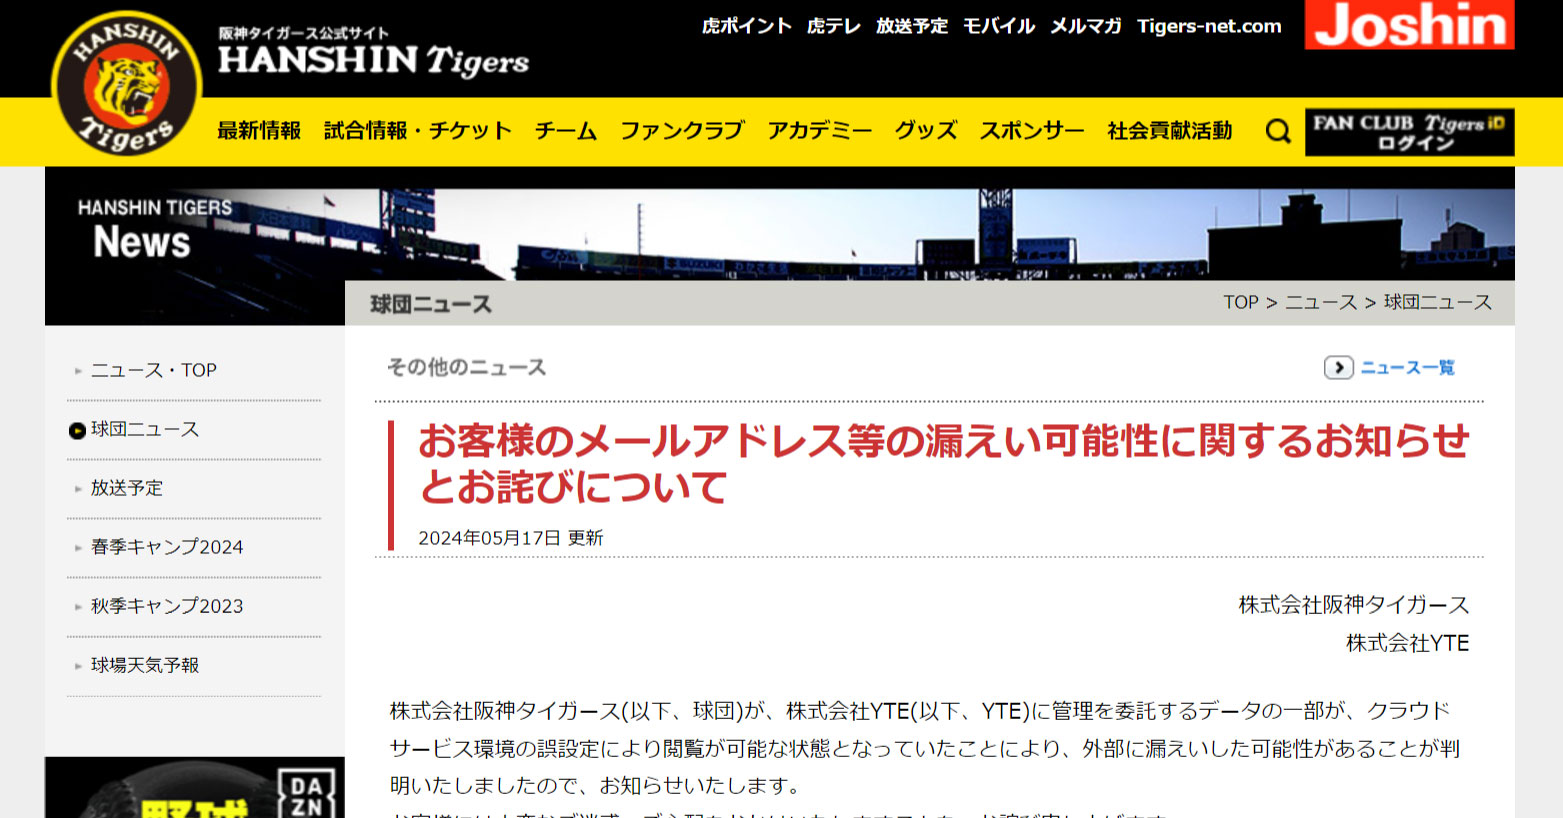 阪神タイガース、キャンペーン応募者のメルアドなど8452件漏えいか　委託先の設定ミスで閲覧可能状態に